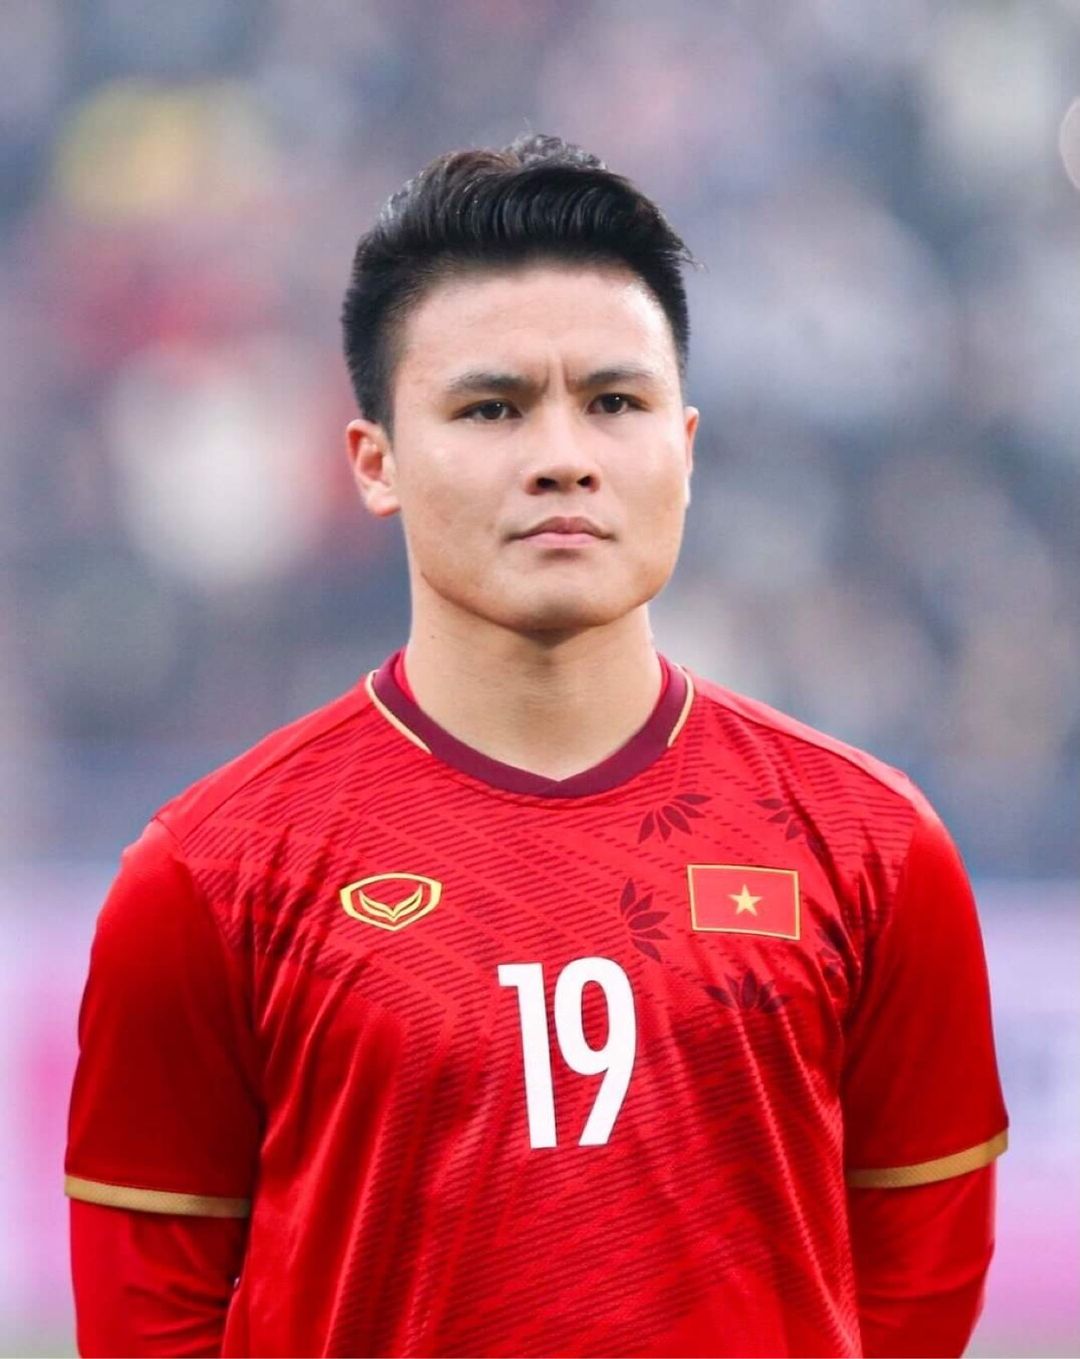 Tiền đạo Quang Hải nổi bật trong sắc đỏ đồng phục tuyển Việt Nam